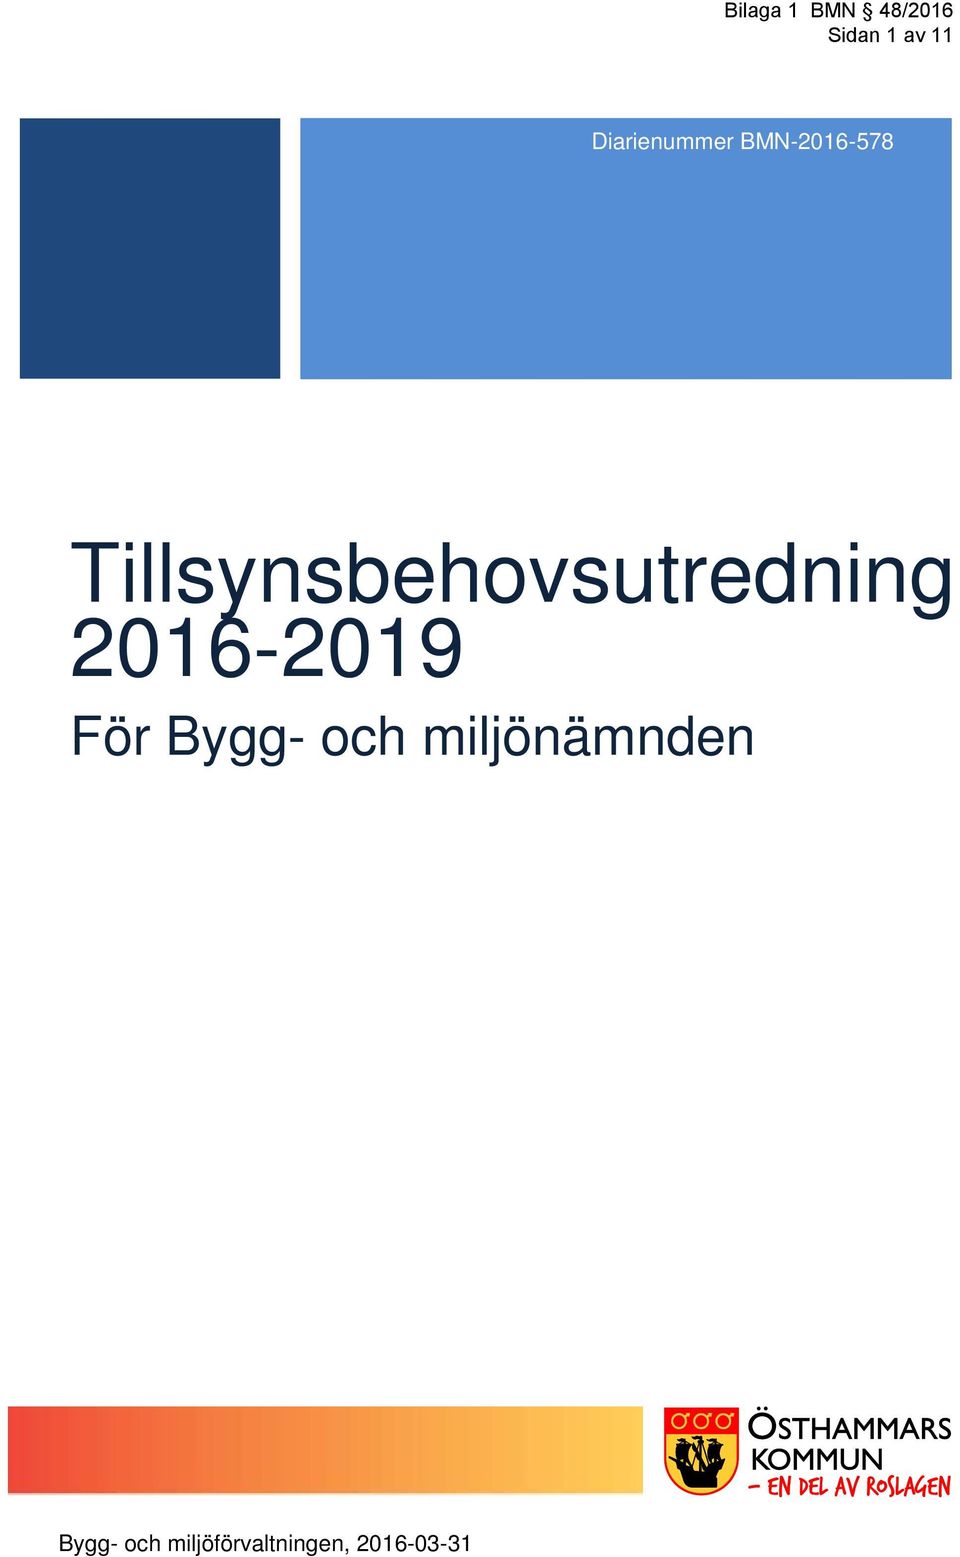 2015BMN0151 Tillsynsbehovsutredning 2016-2019